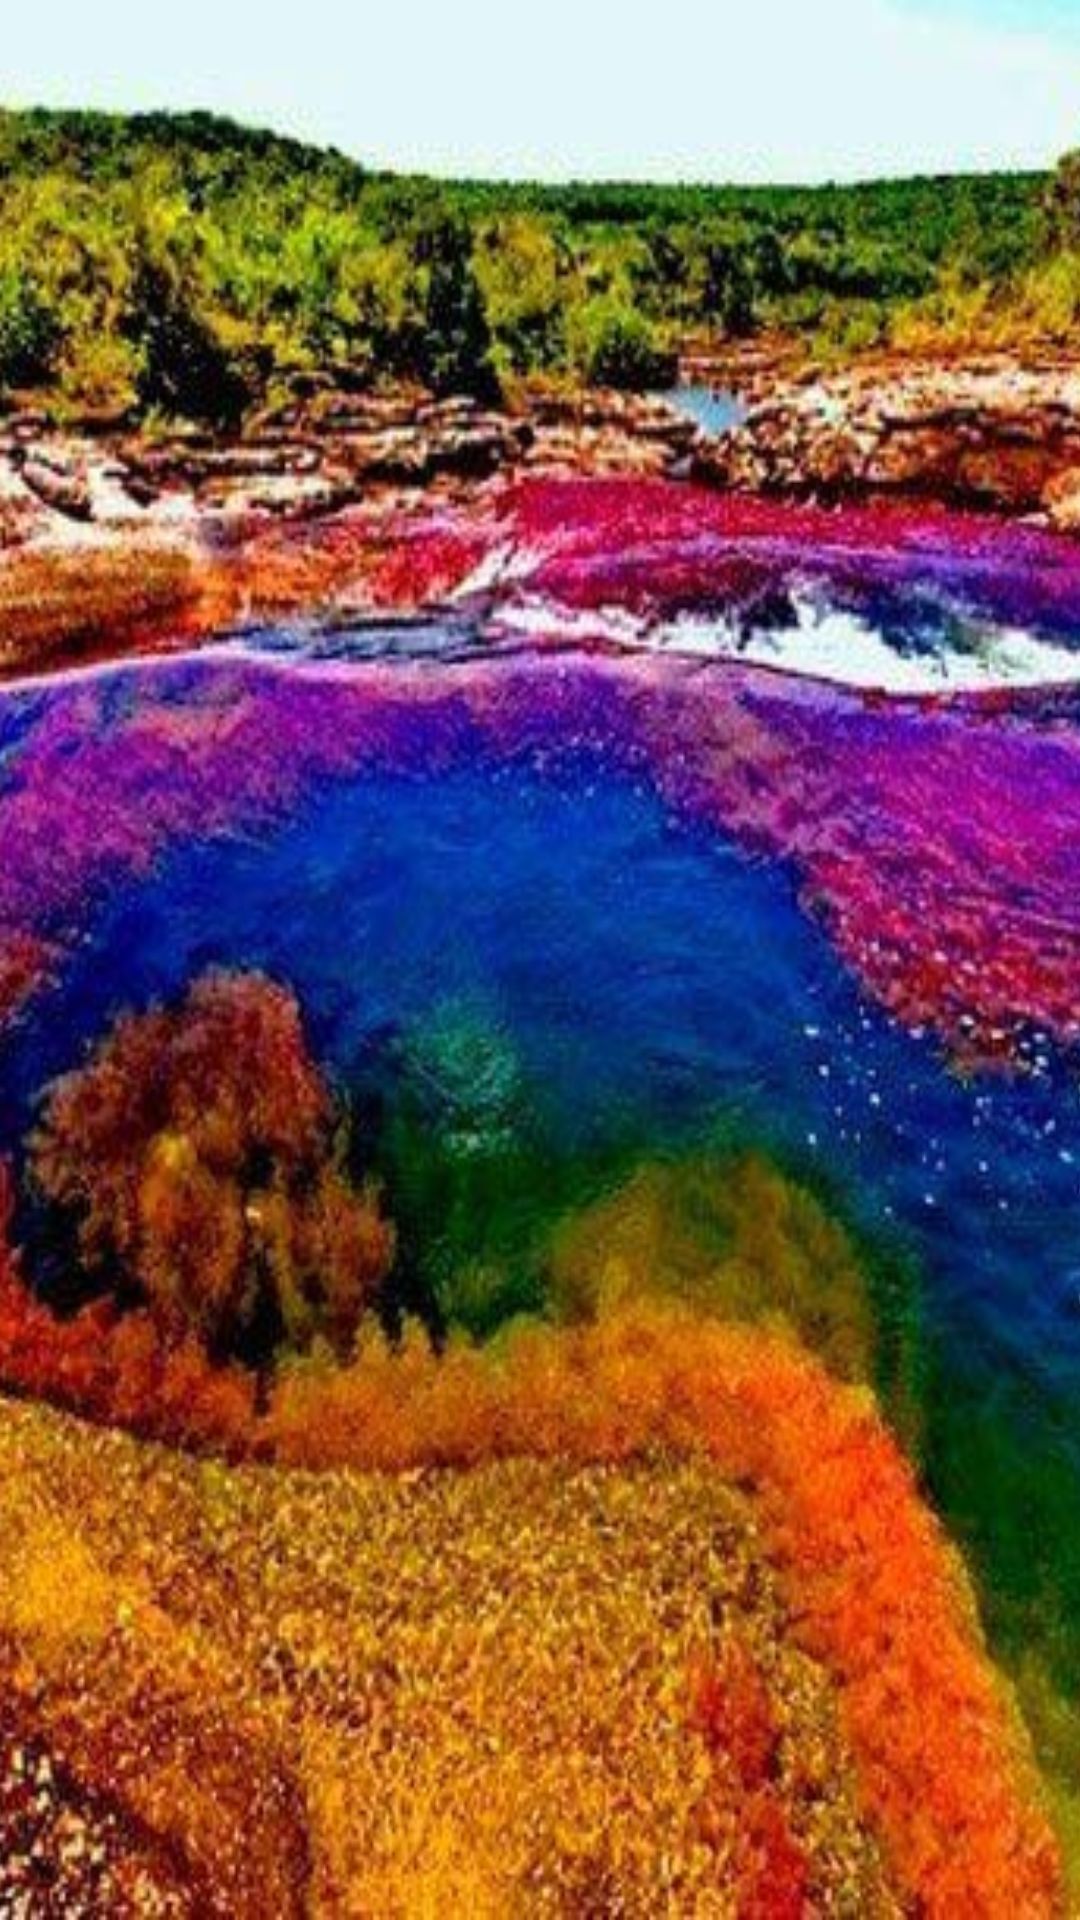 ये है दुनिया की सबसे रंग-बिरंगी नदी, बहता है 5 रंगों का पानी